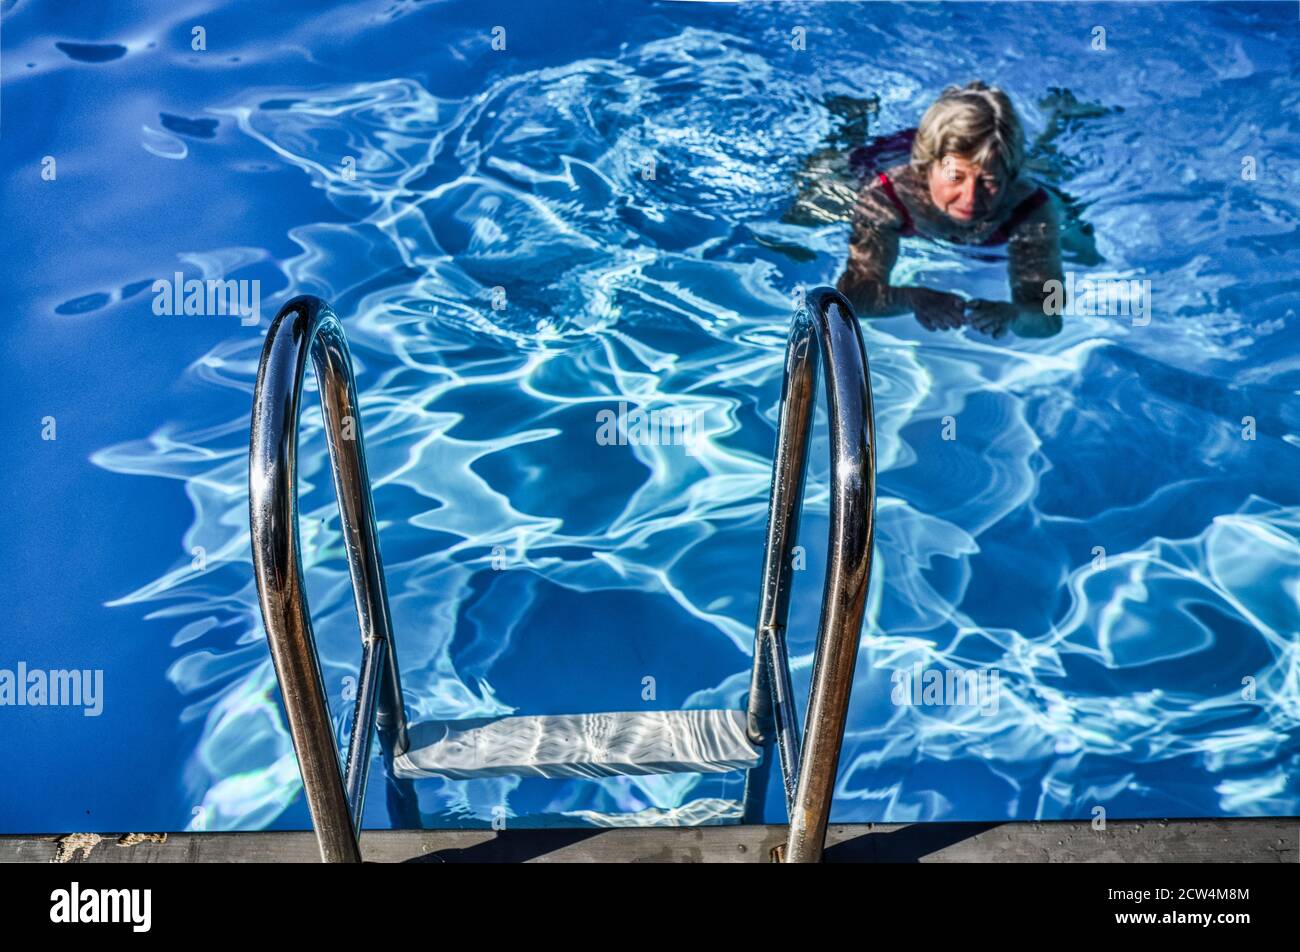 Femme nageant seule dans une piscine Banque D'Images